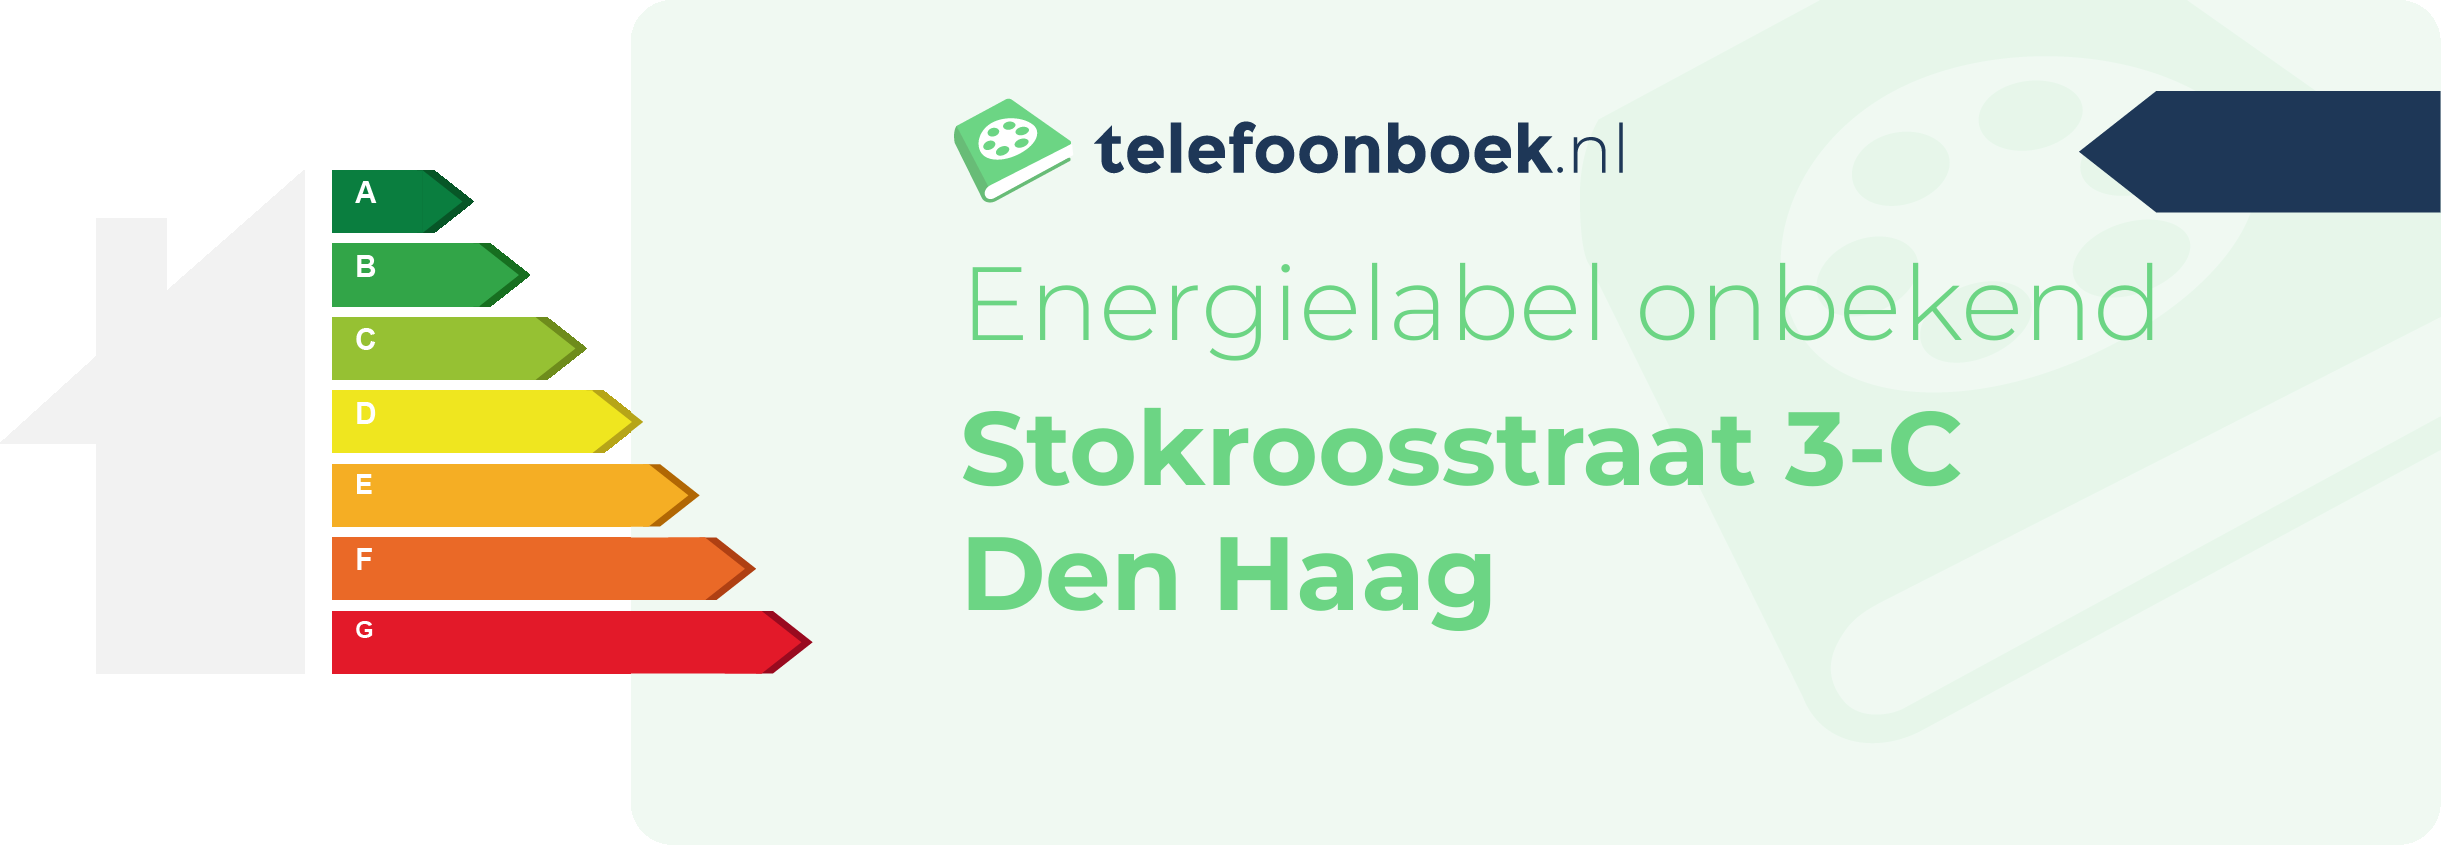 Energielabel Stokroosstraat 3-C Den Haag